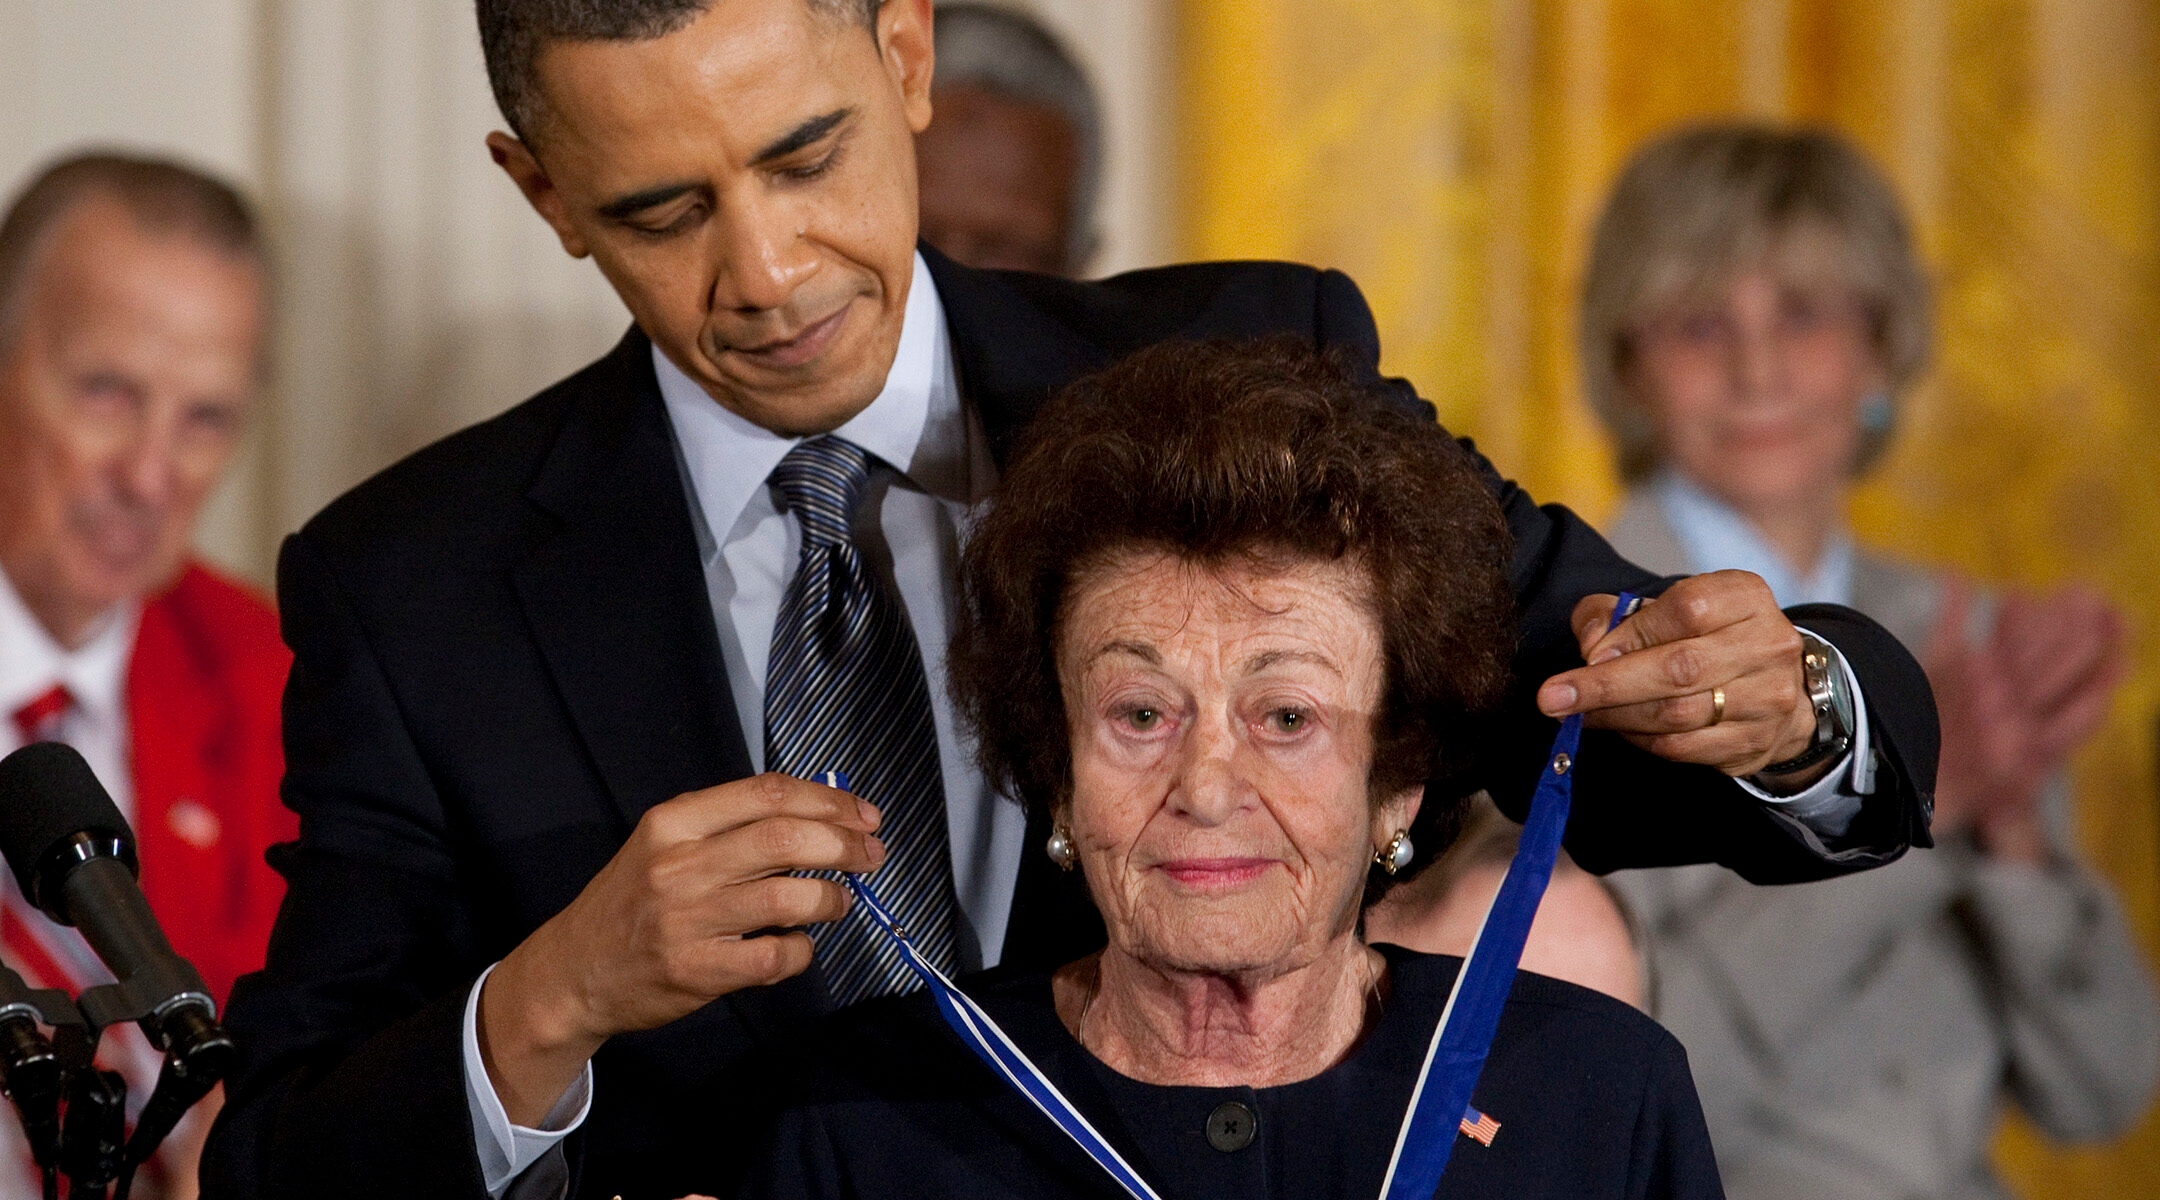 Former President Barack Obama presents Jewish Holocaust survivor Gerda Weissmann Klein